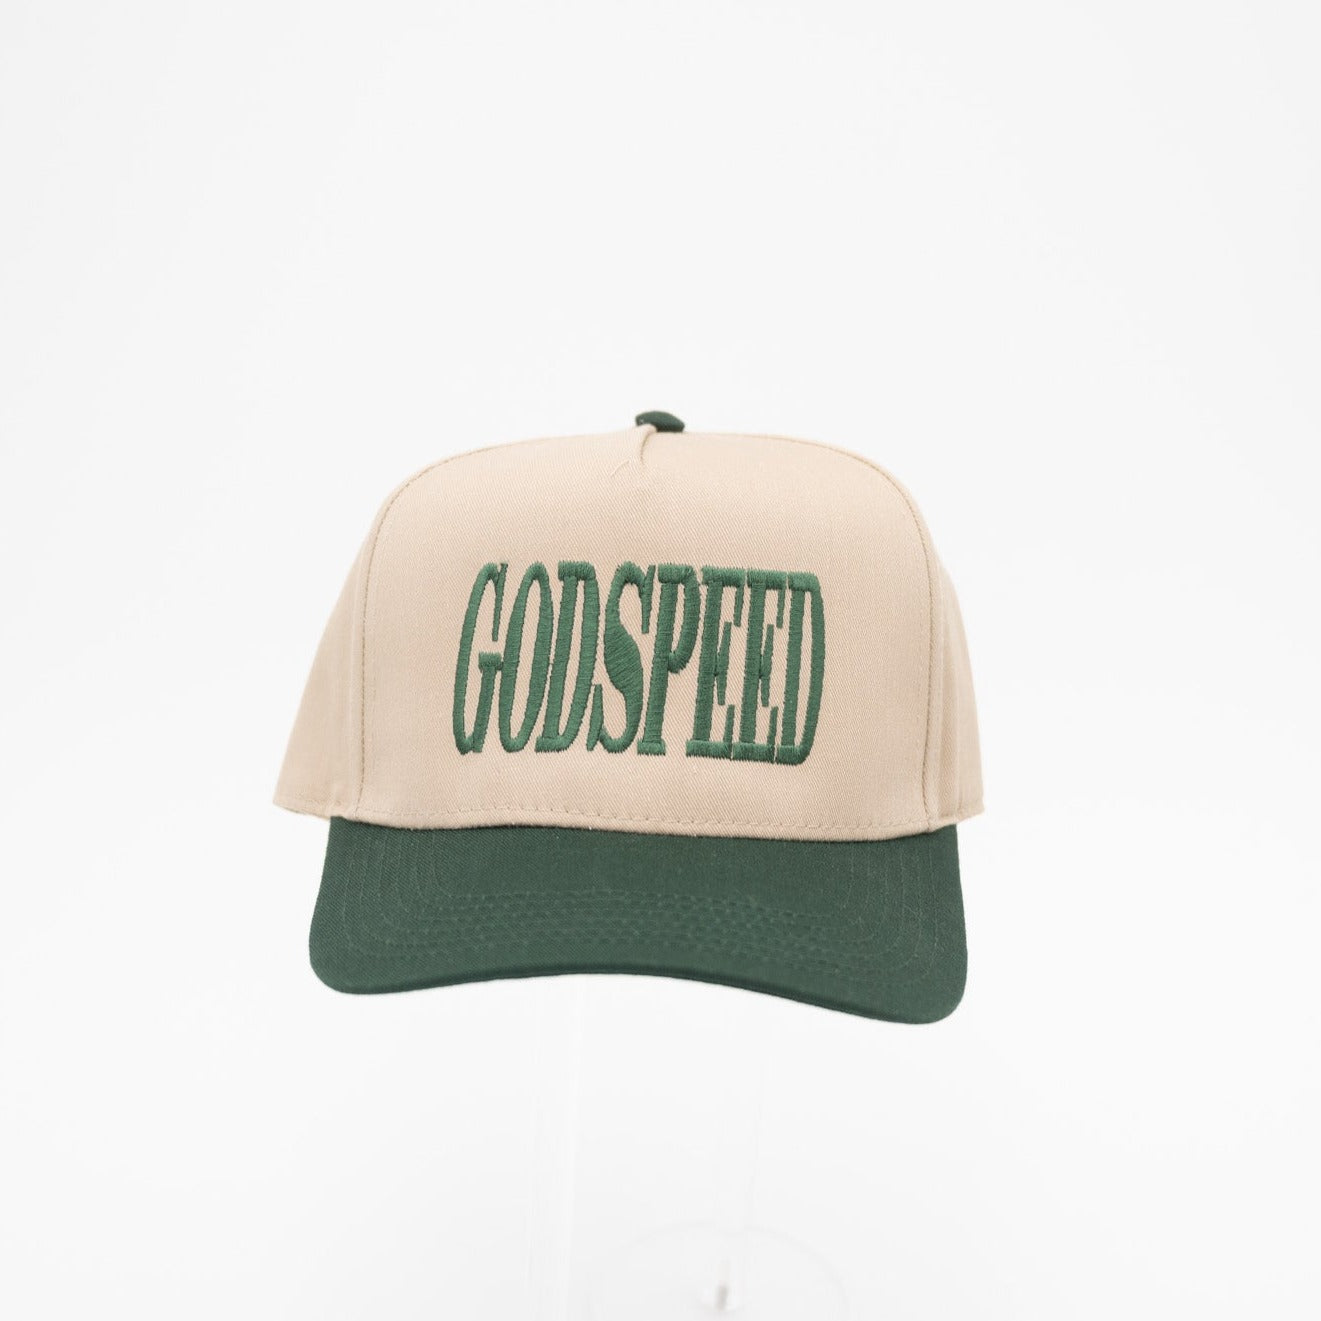 Godspeed Vintage Hat